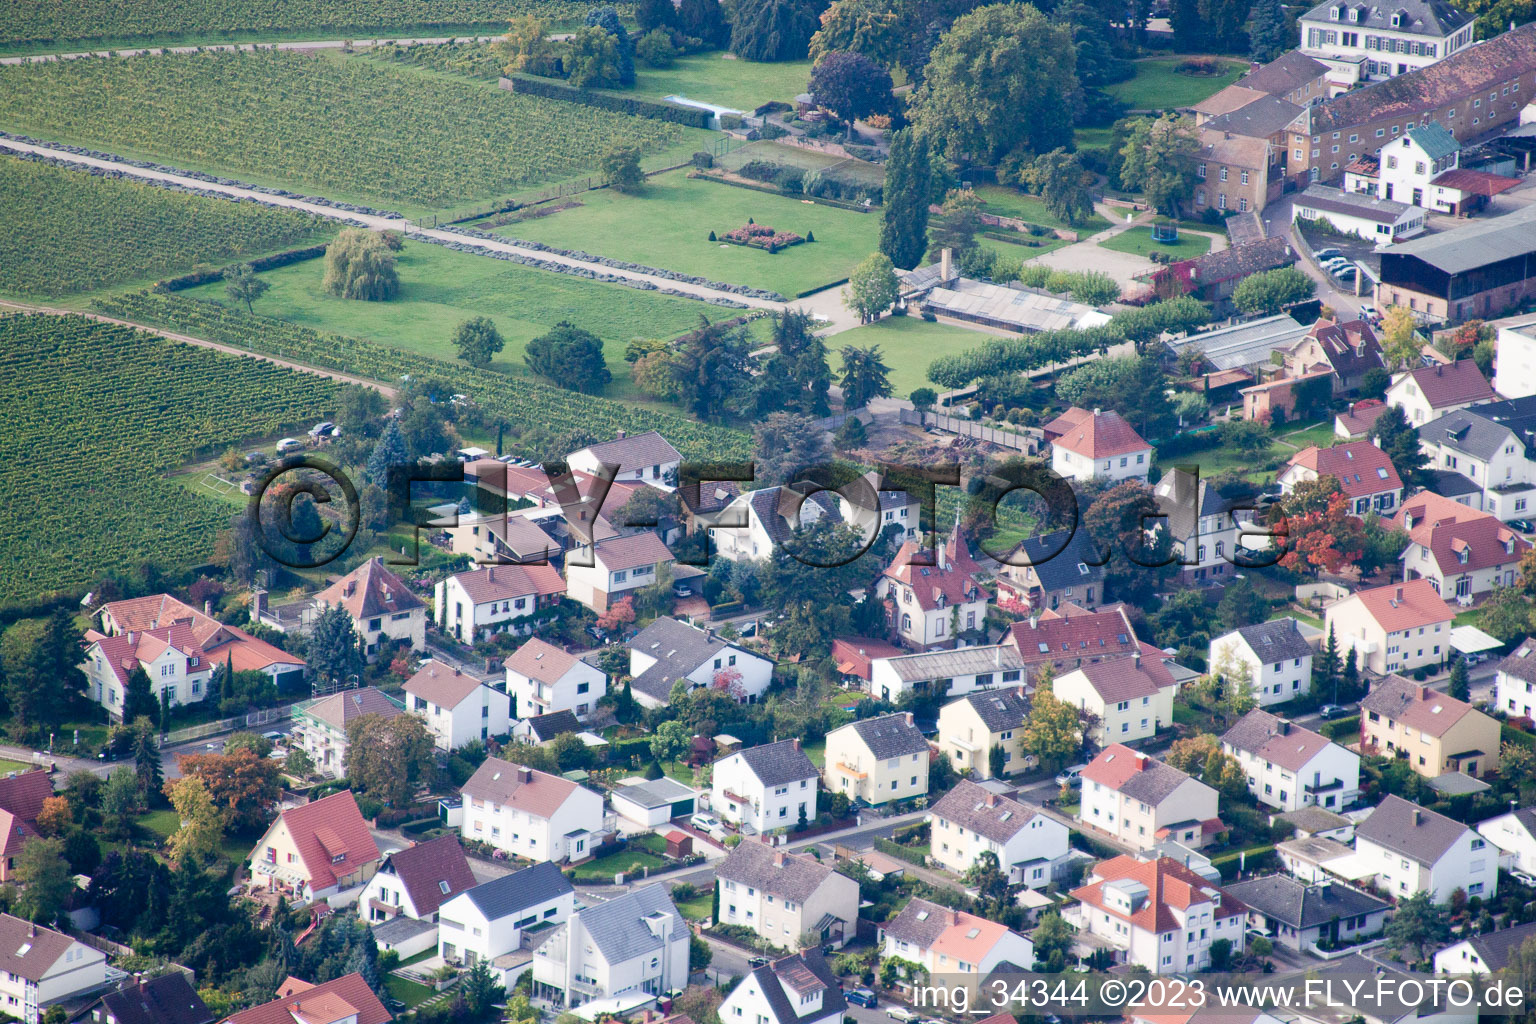 Zimmermann's apple days in Wachenheim an der Weinstraße in the state Rhineland-Palatinate, Germany seen from above